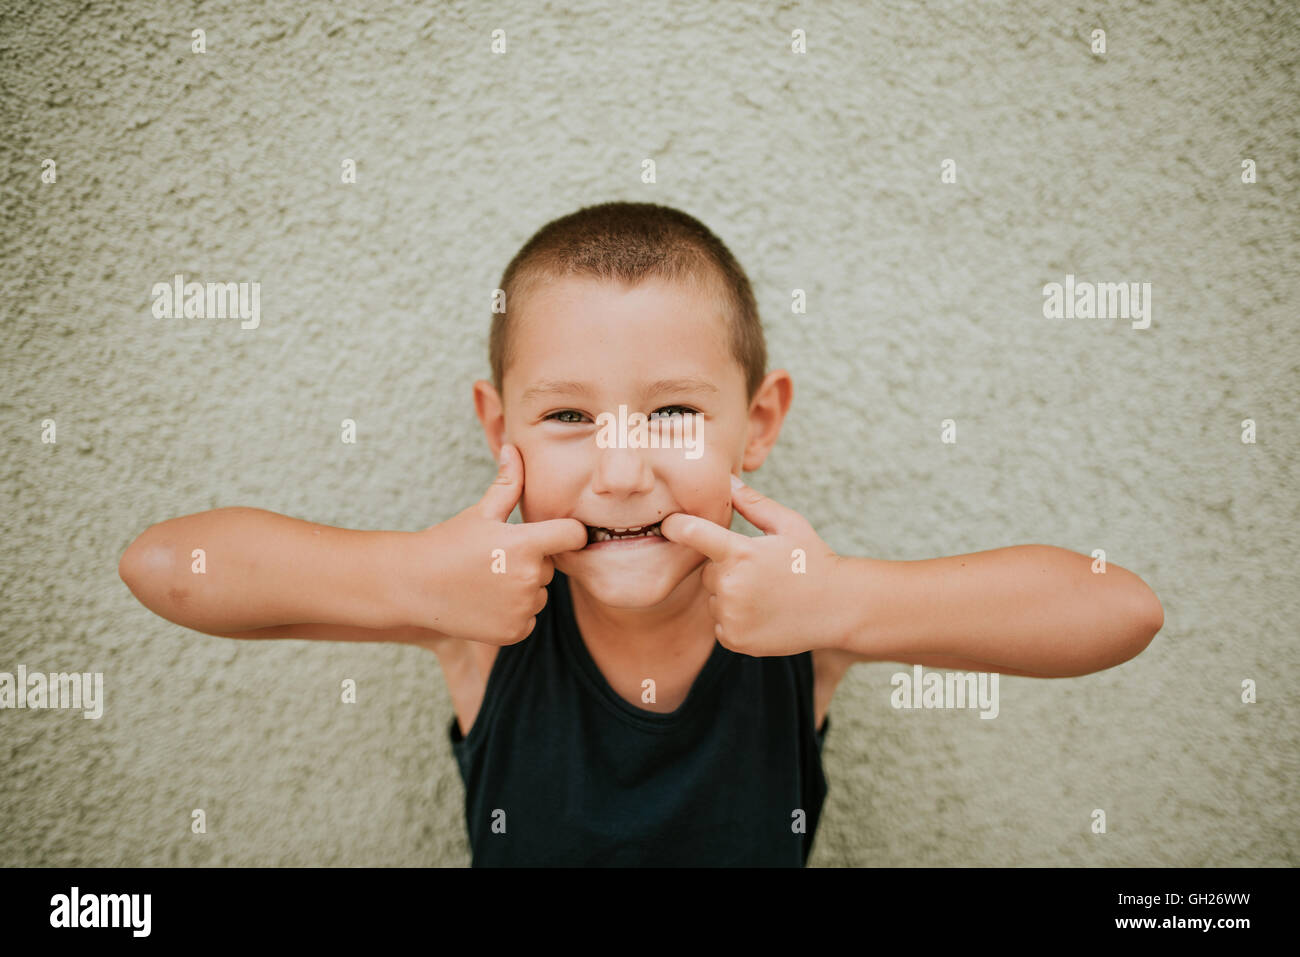 Preschooler boy making funny faces Stock Photo